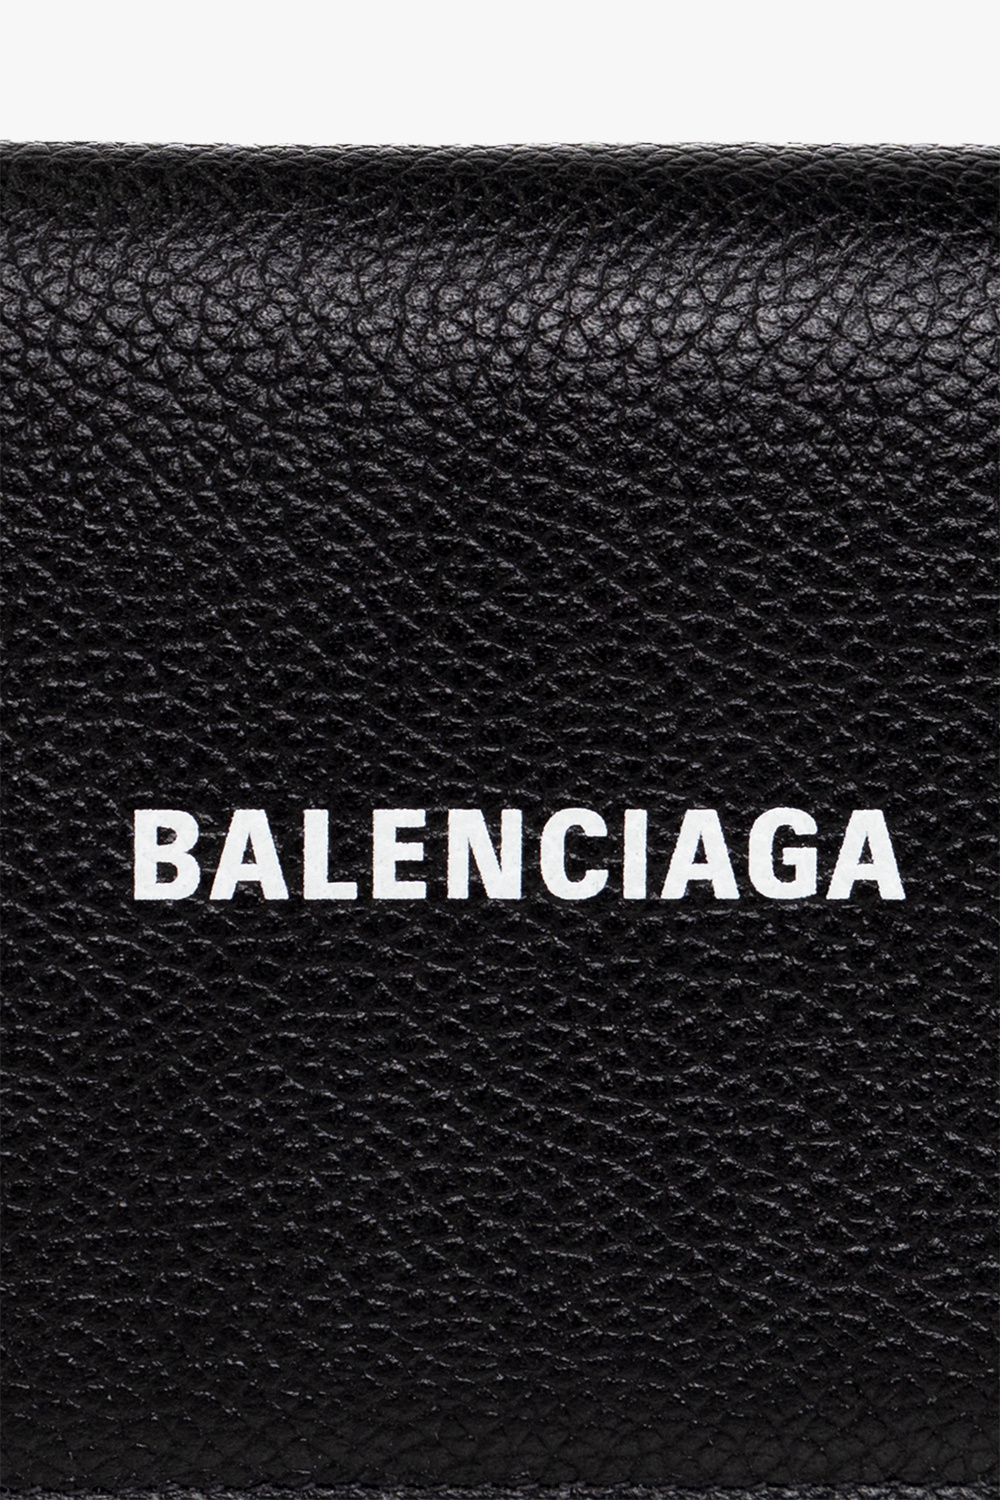 Balenciaga Boys clothes 4-14 years